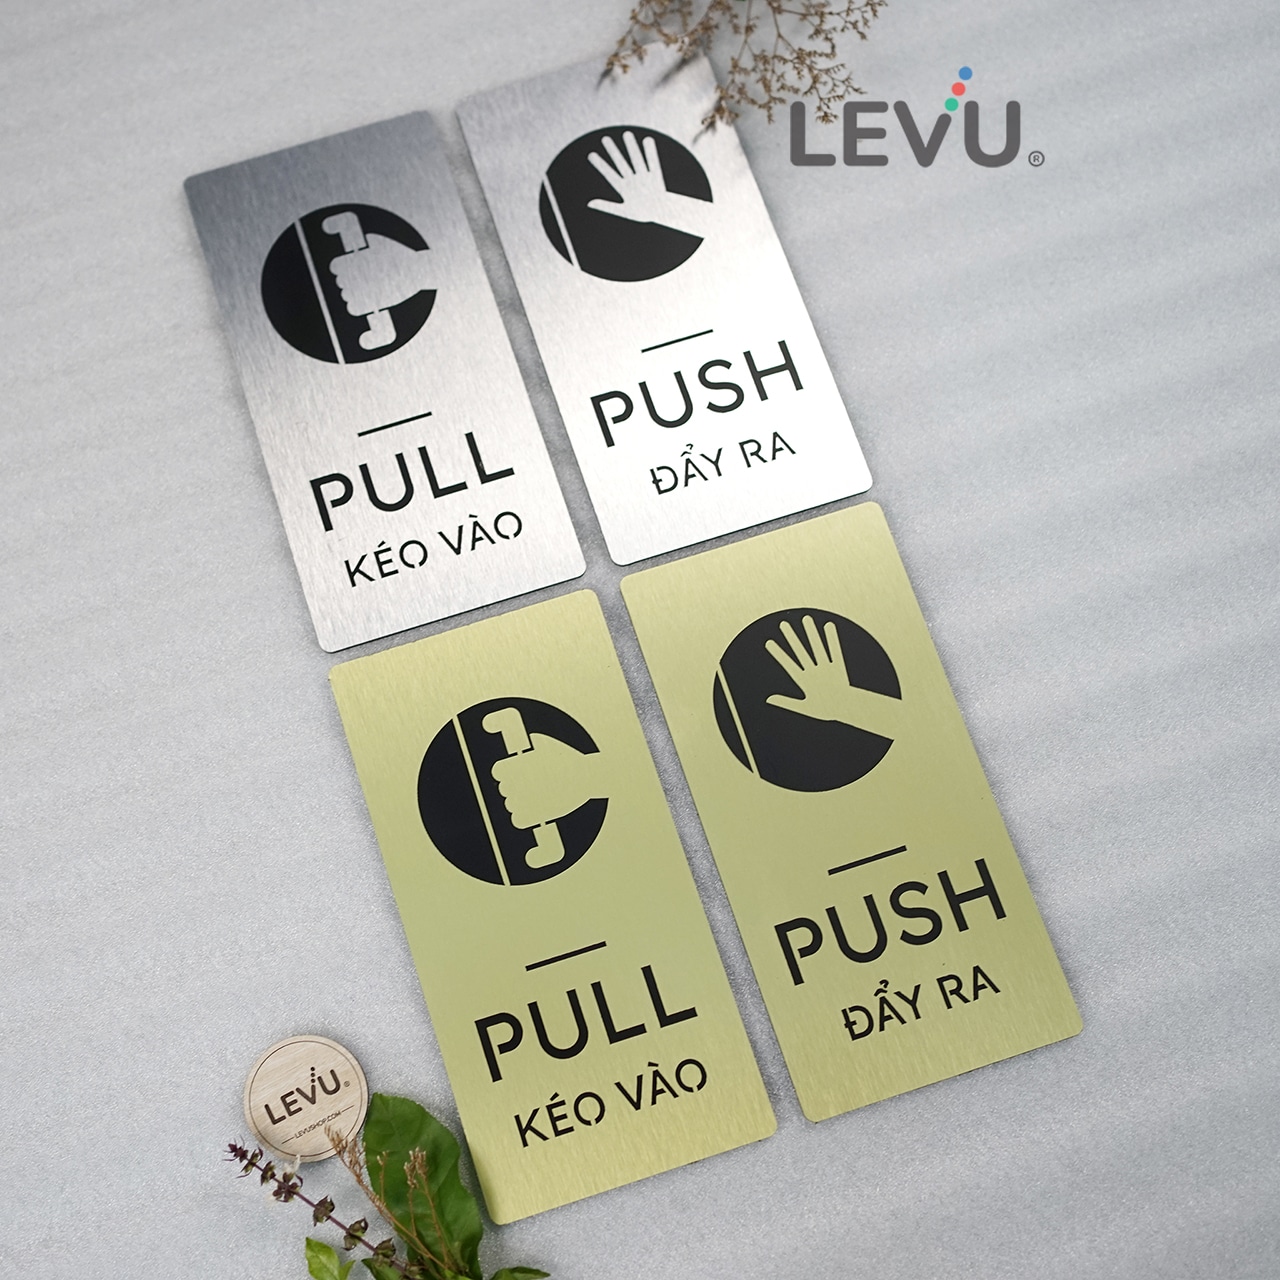 Bộ bảng alu nhôm pull push hướng dẫn kéo đẩy cửa ra vào LEVU-ALU04